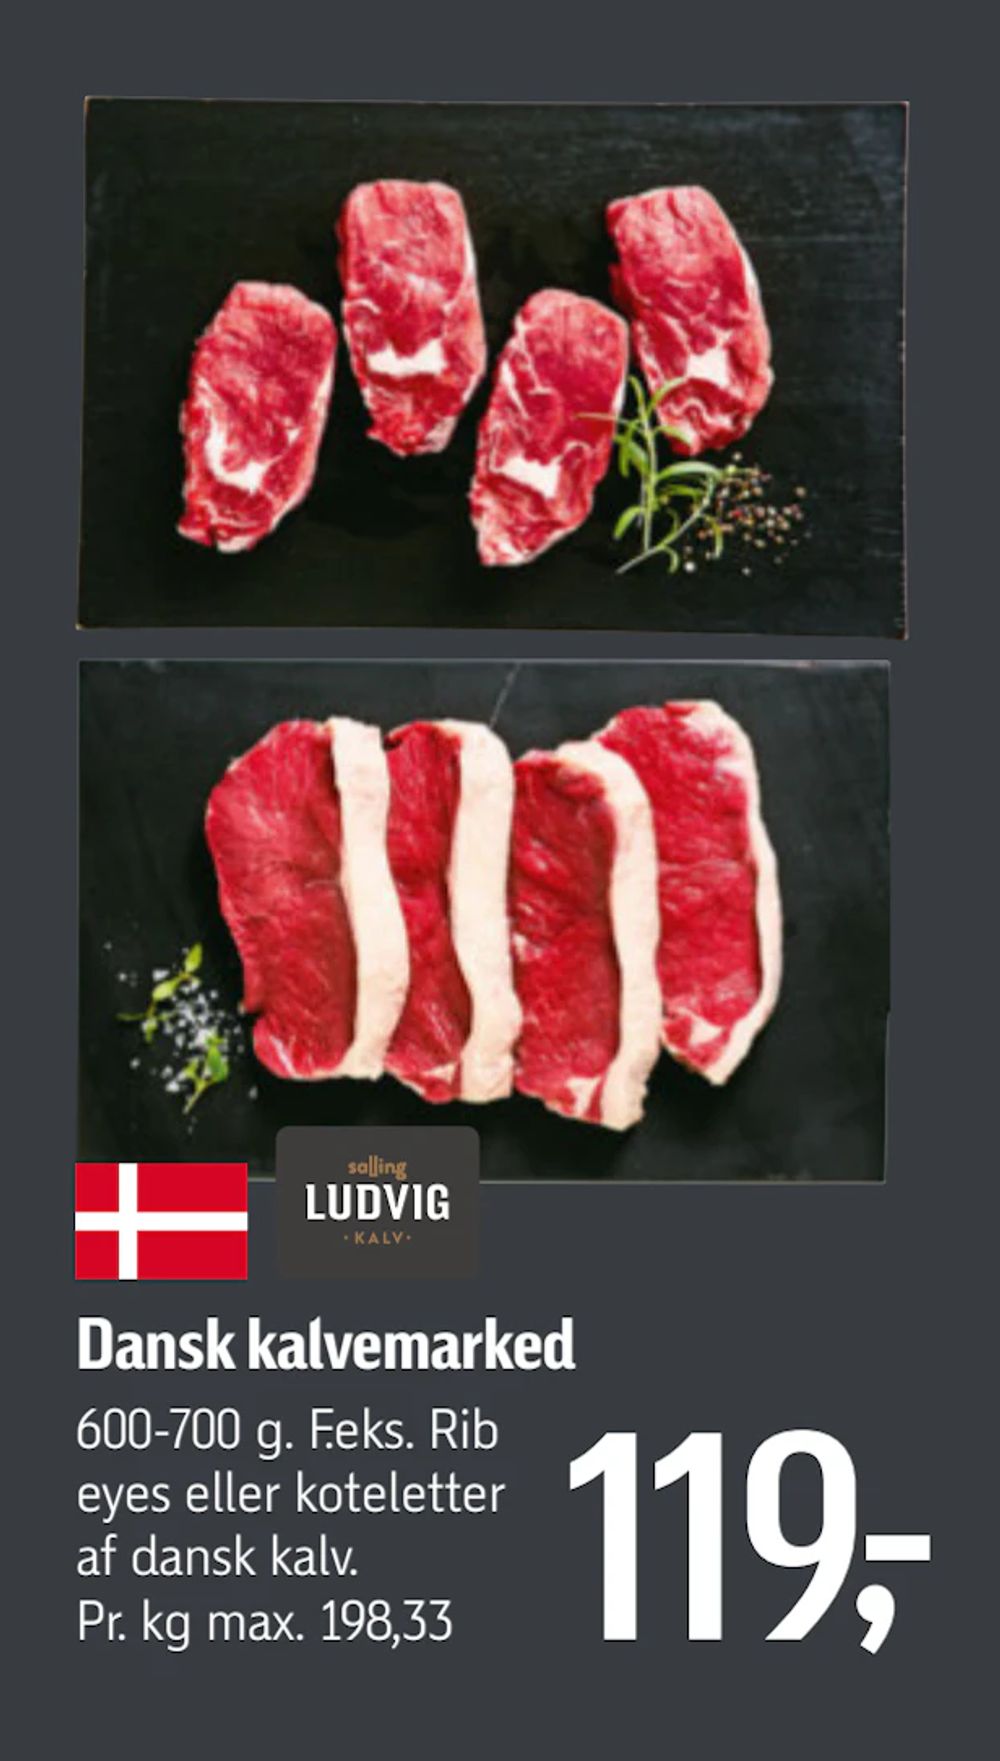 Tilbud på Dansk kalvemarked fra føtex til 119 kr.